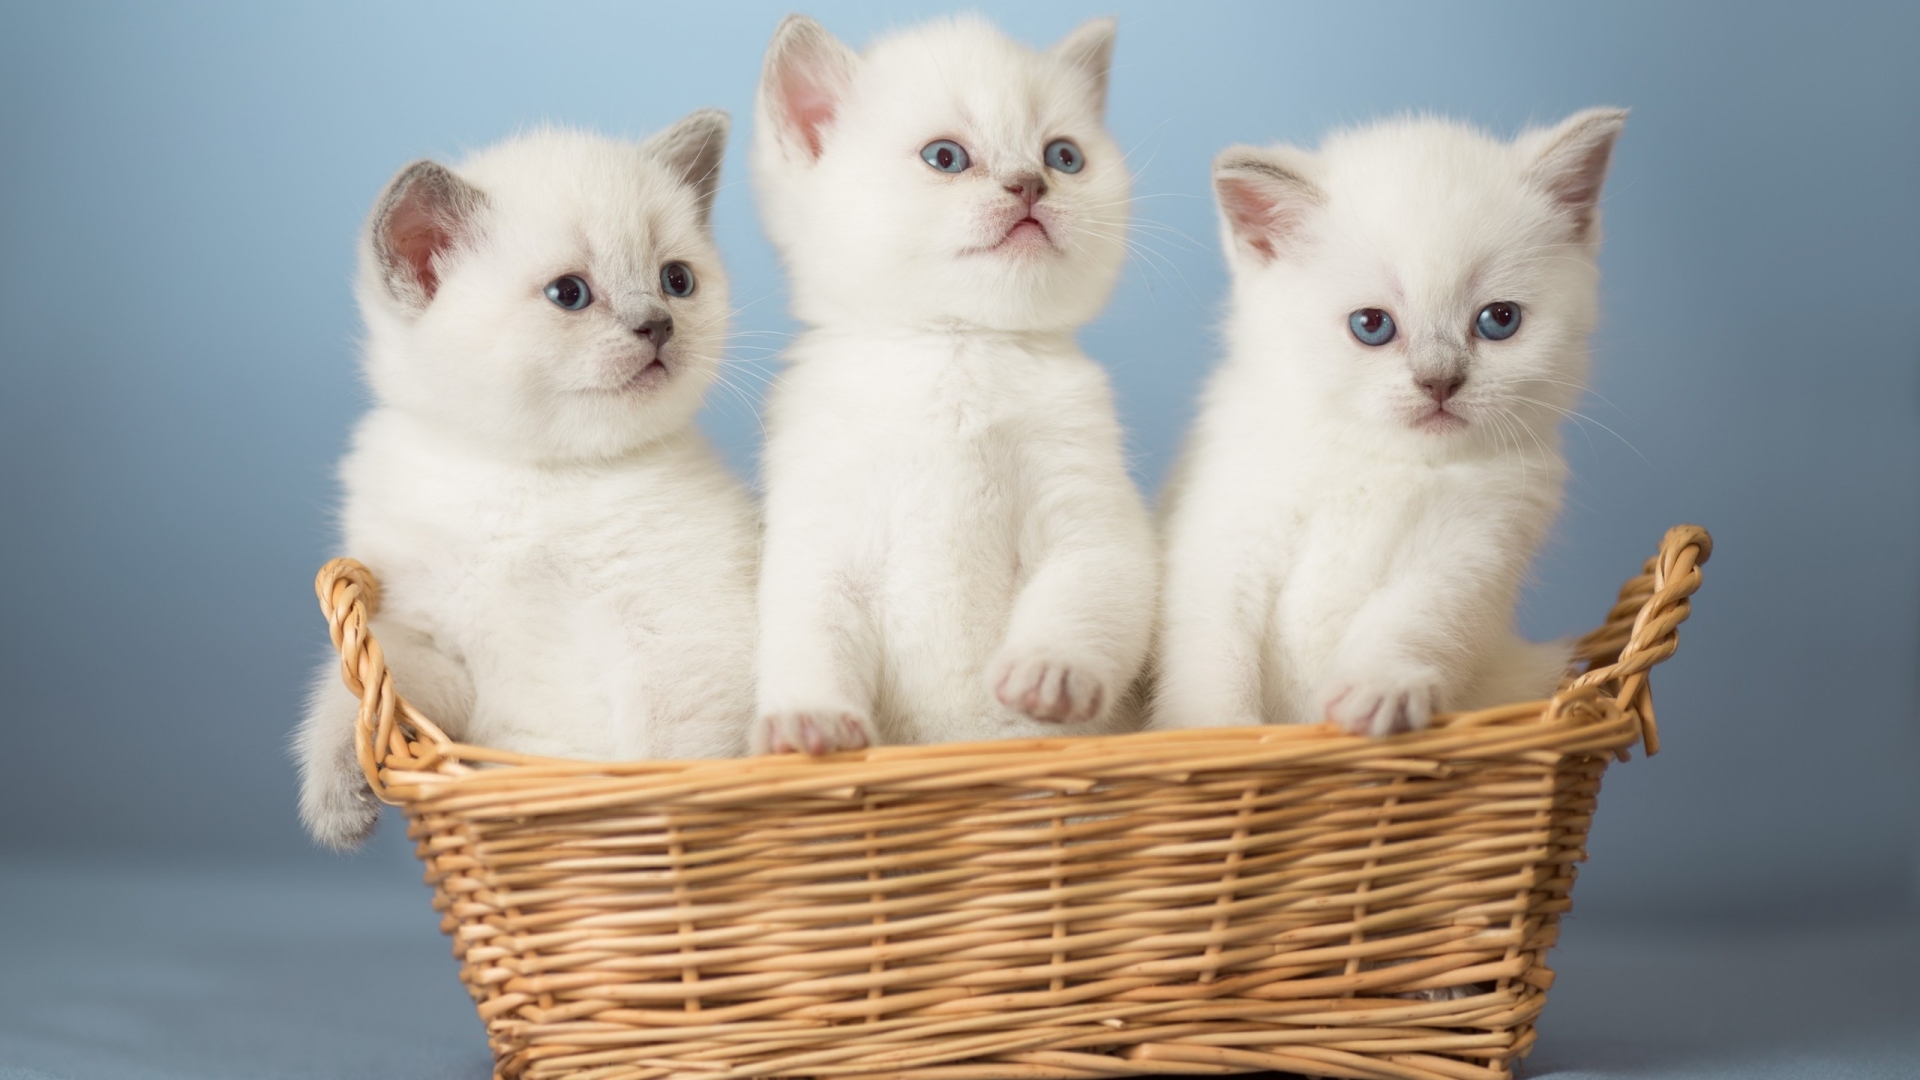 White Kittens for 1920 x 1080 HDTV 1080p resolution